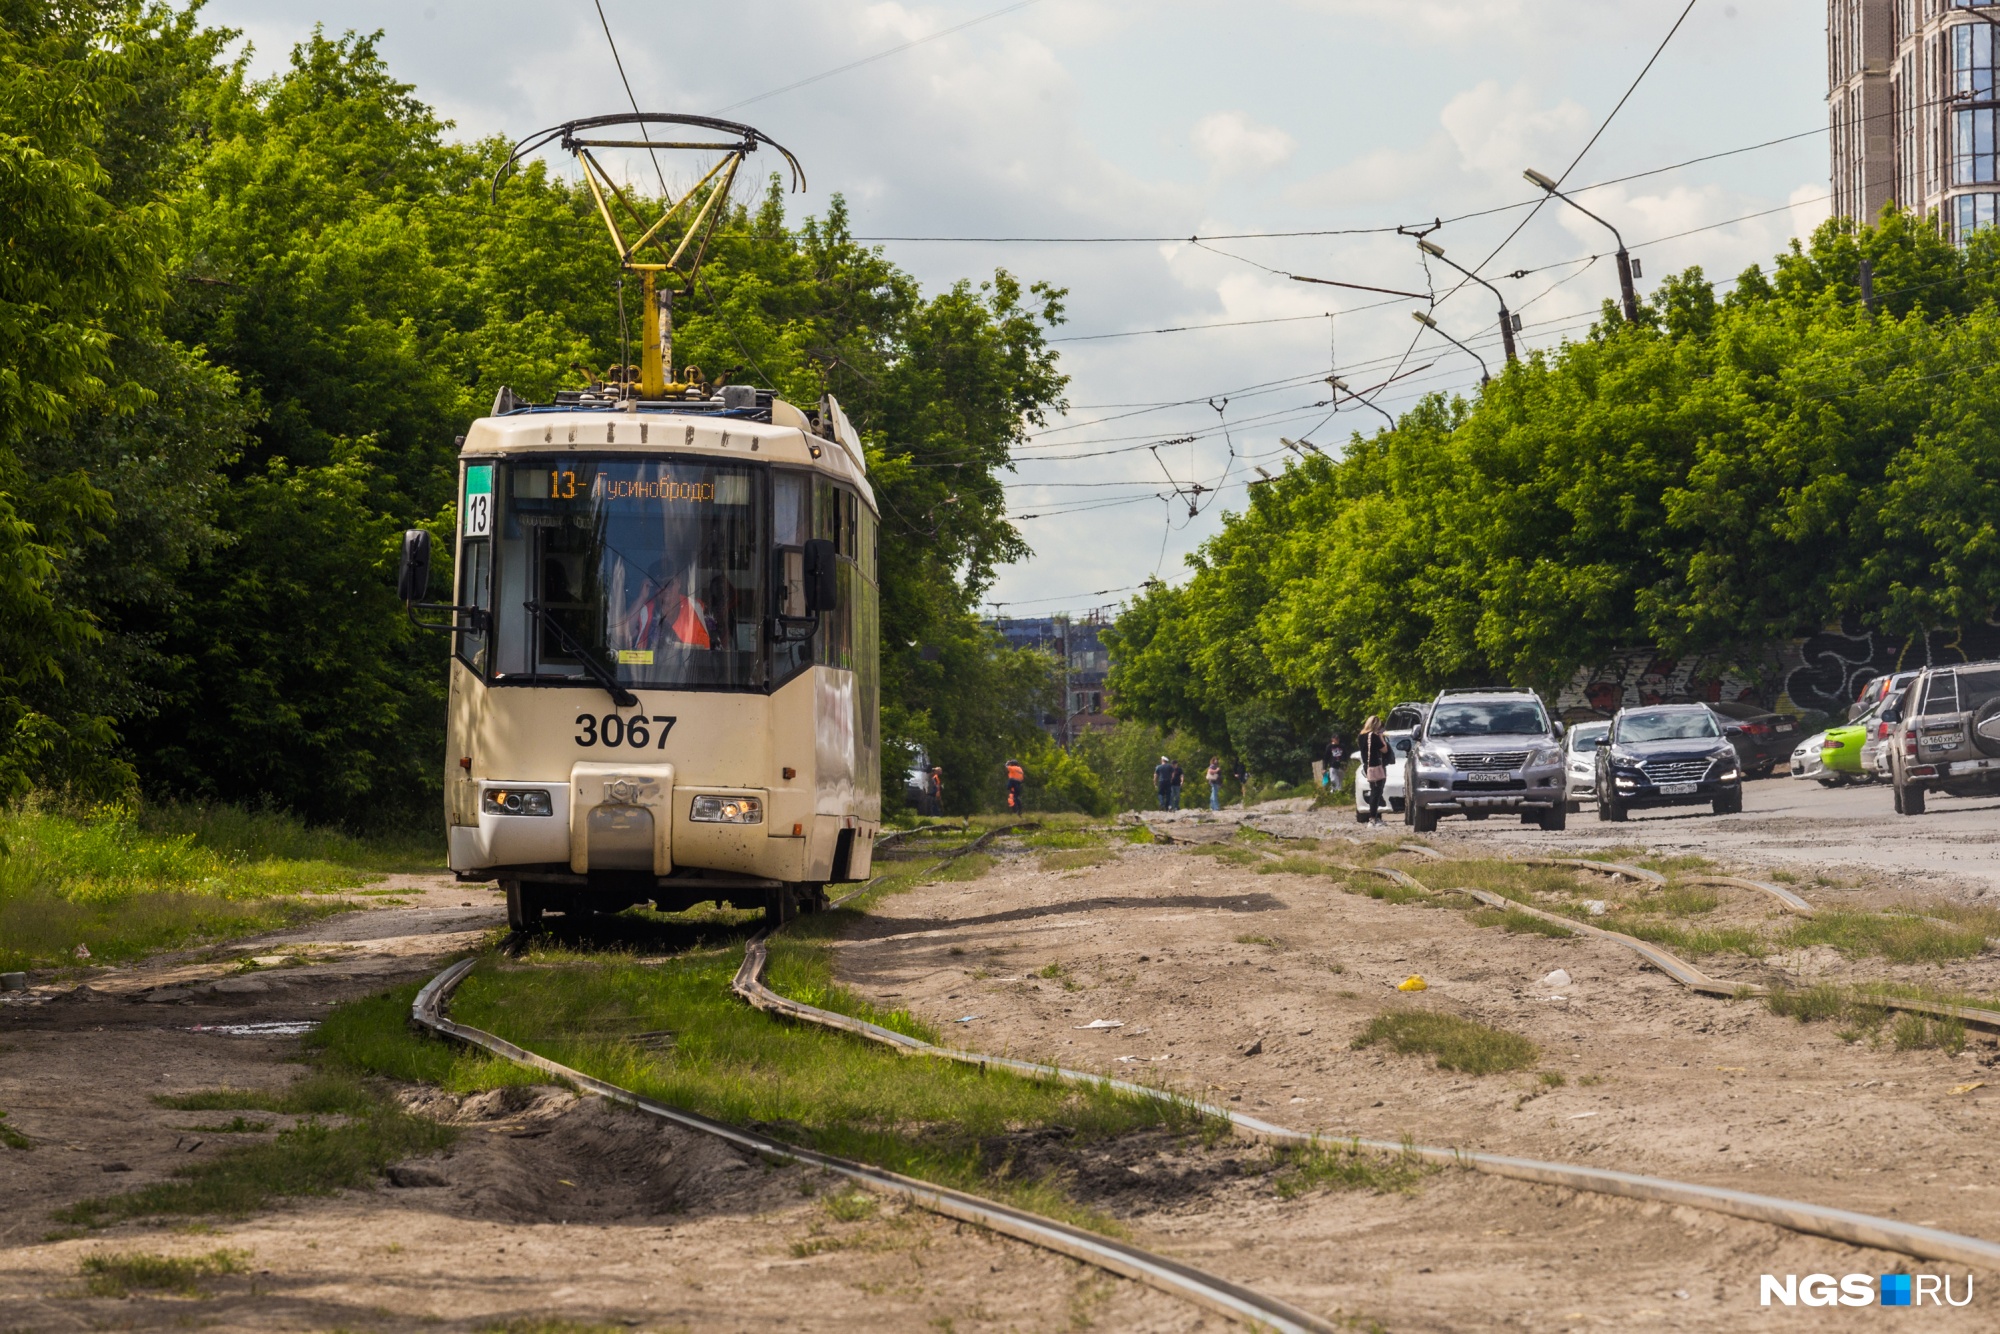 В Новосибирске легендарный трамвай № 13 поменял свой путь из-за закрытия двух маршрутов